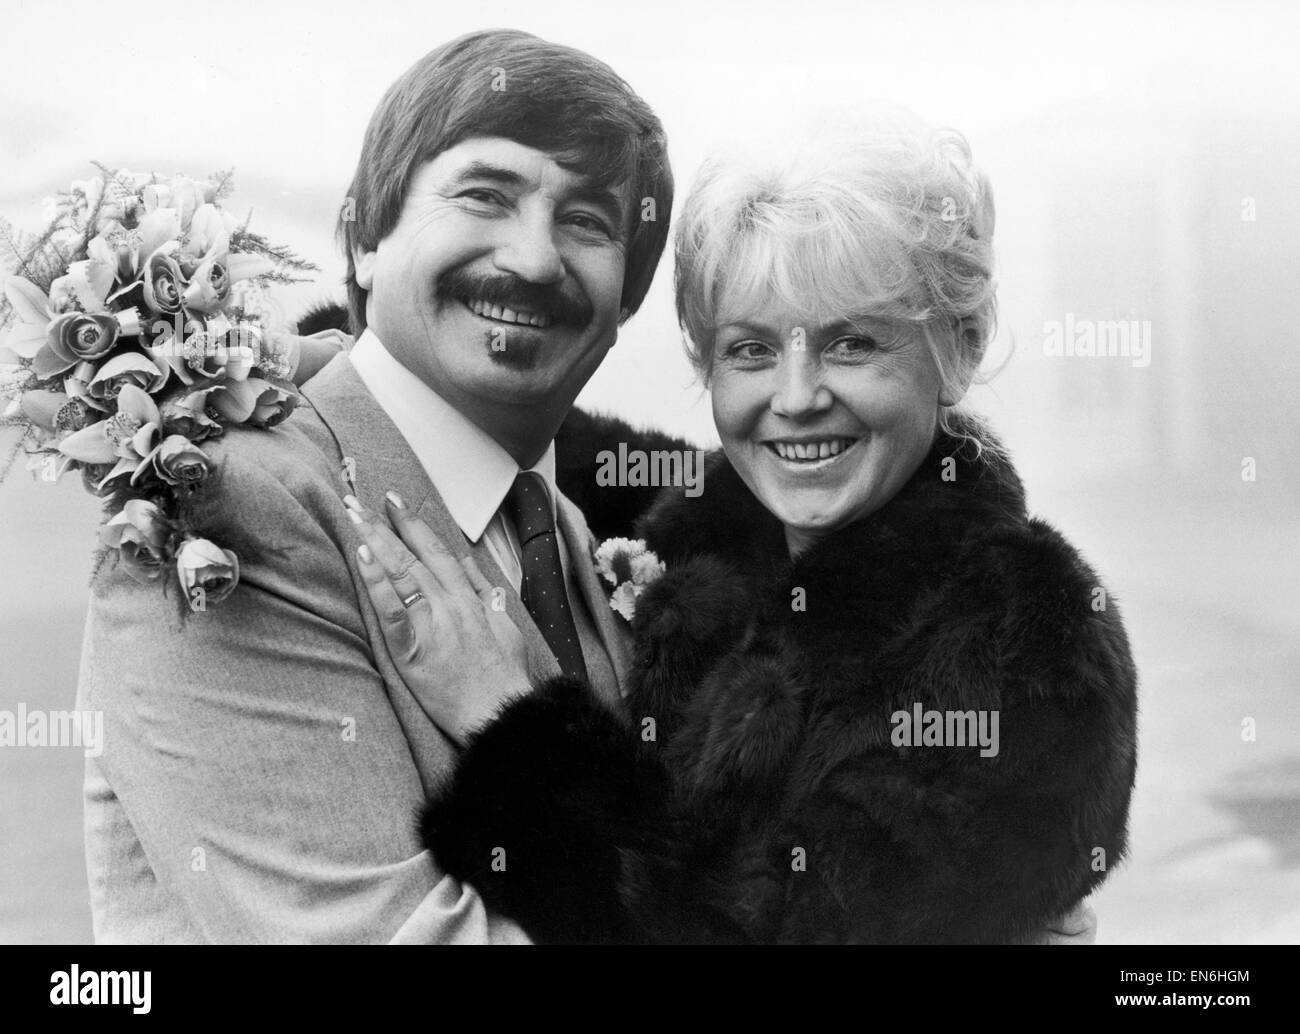 Le trompettiste de jazz Kenny balle avec sa nouvelle épouse Michelle Wilde le jour de leur mariage. Le 28 décembre 1984. Banque D'Images